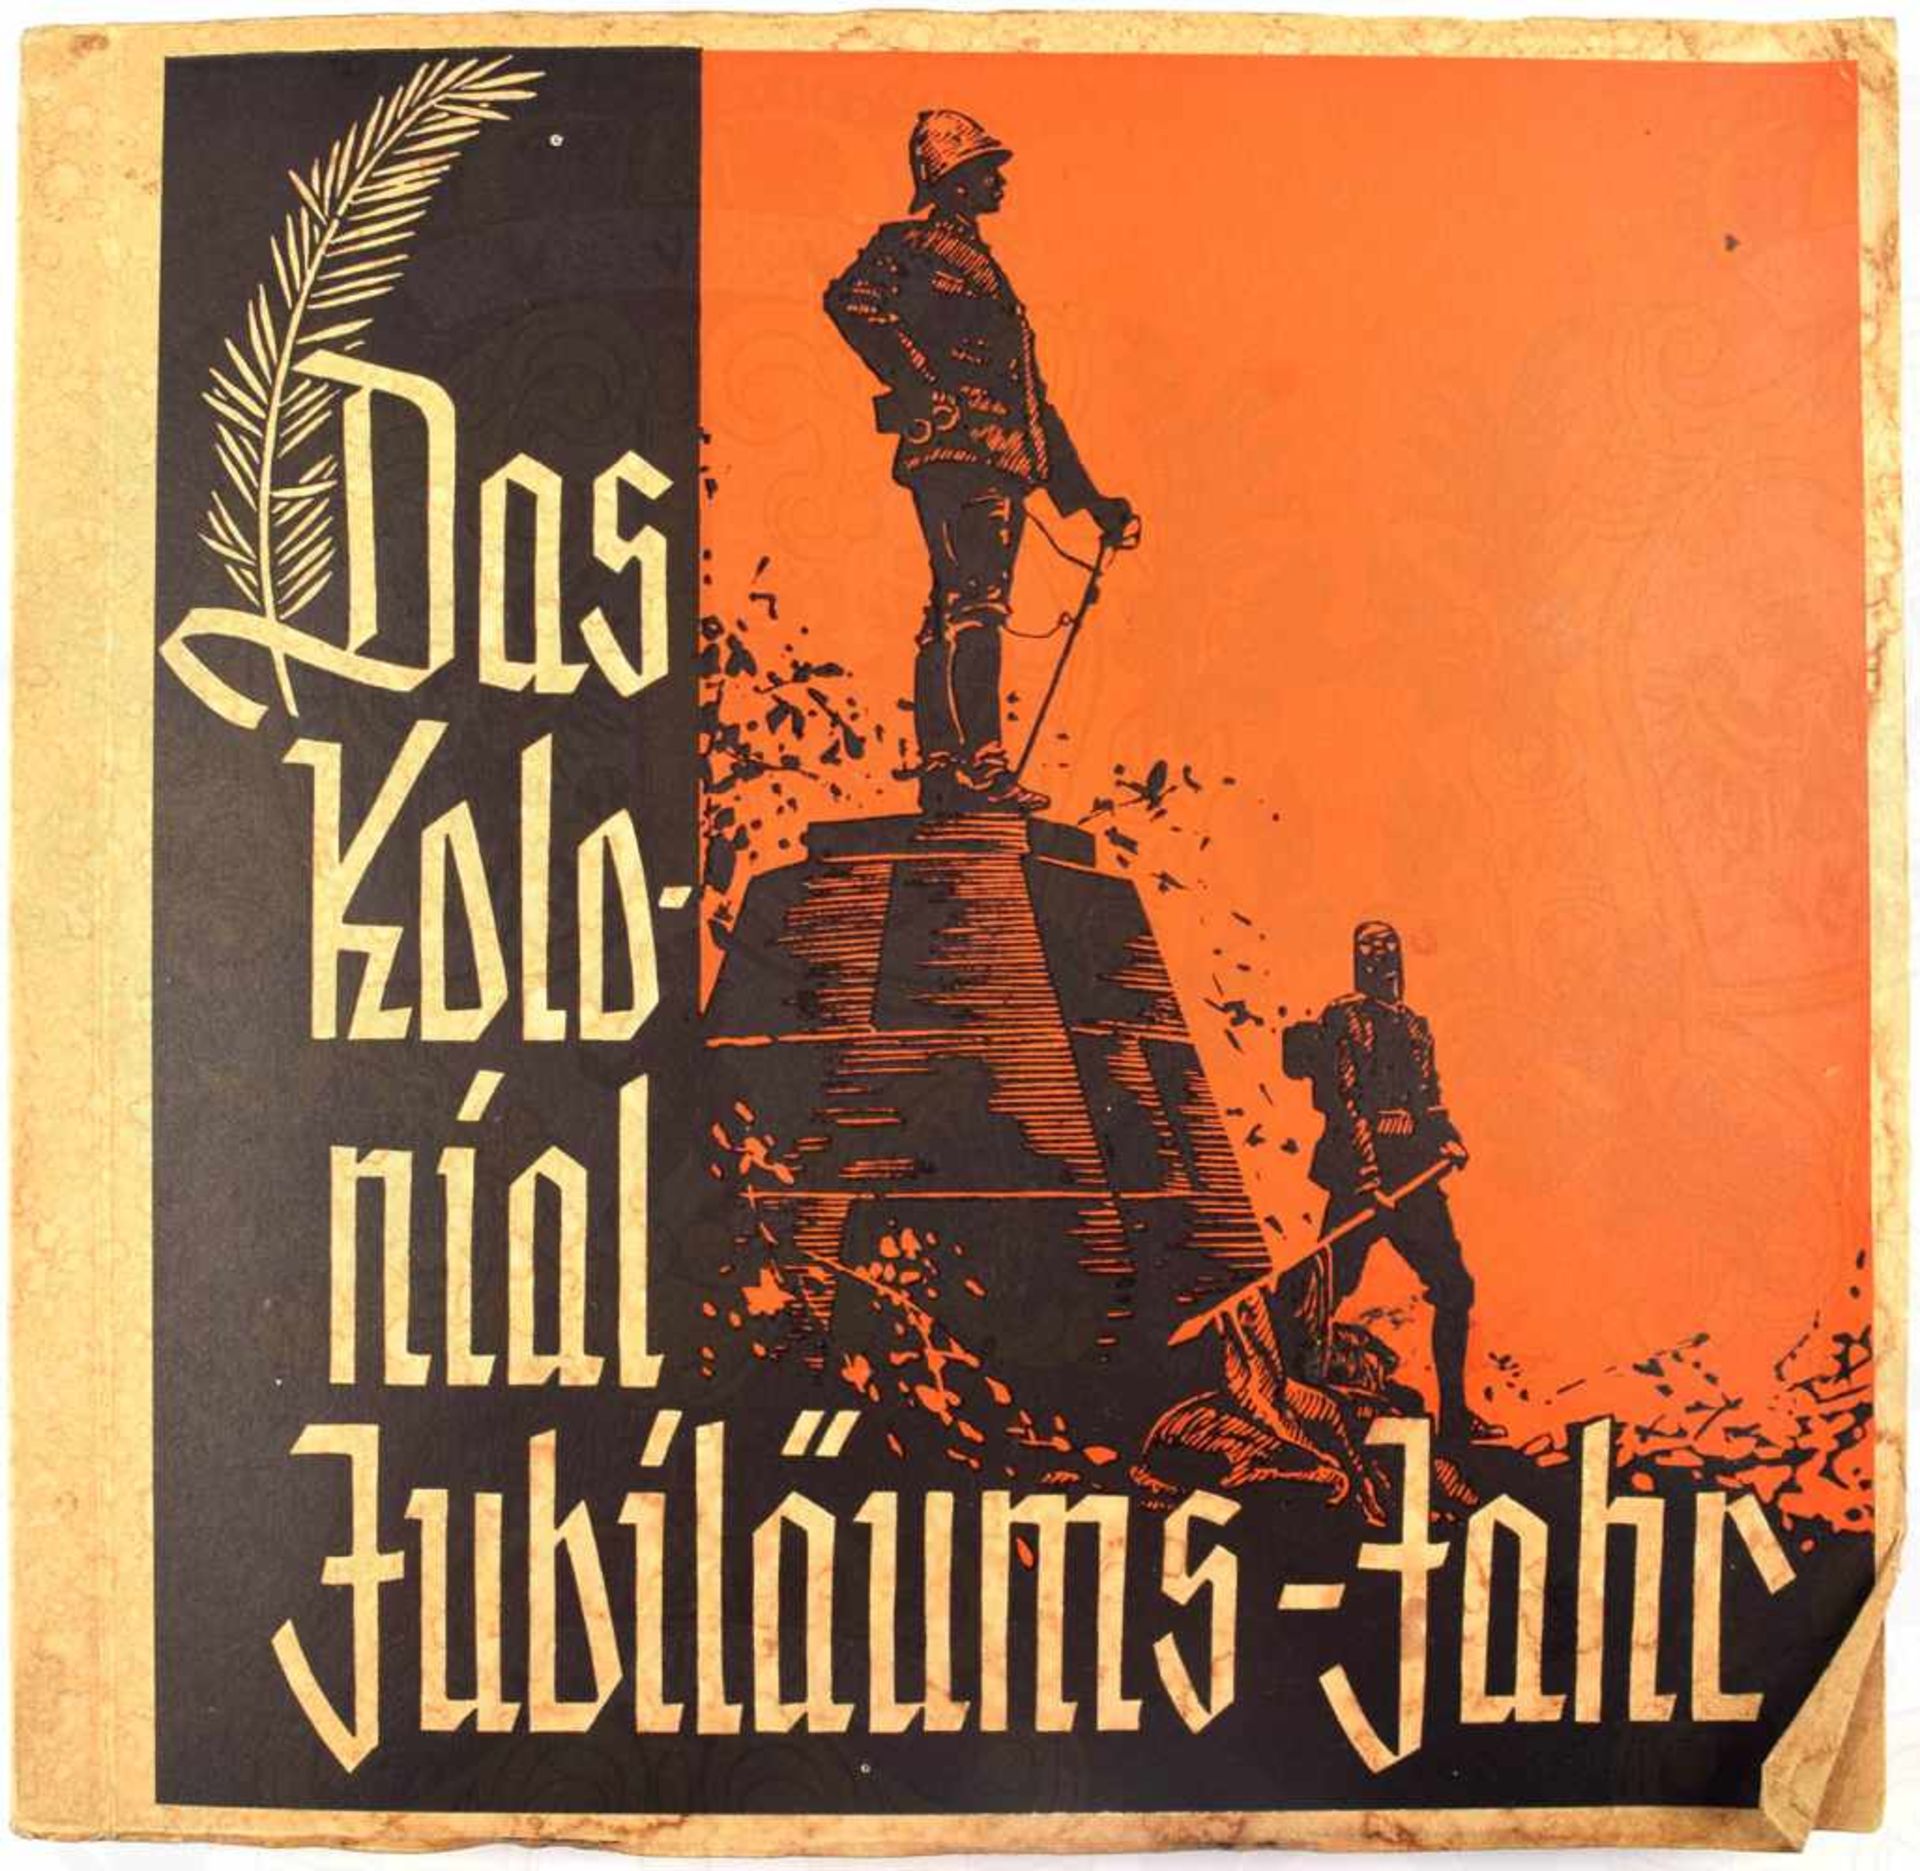 DAS KOLONIAL JUBILÄUMS-JAHR, Großeinkaufsgenossenschaft Hamburg, 1934, 144 farb. Bilder (Bild 142